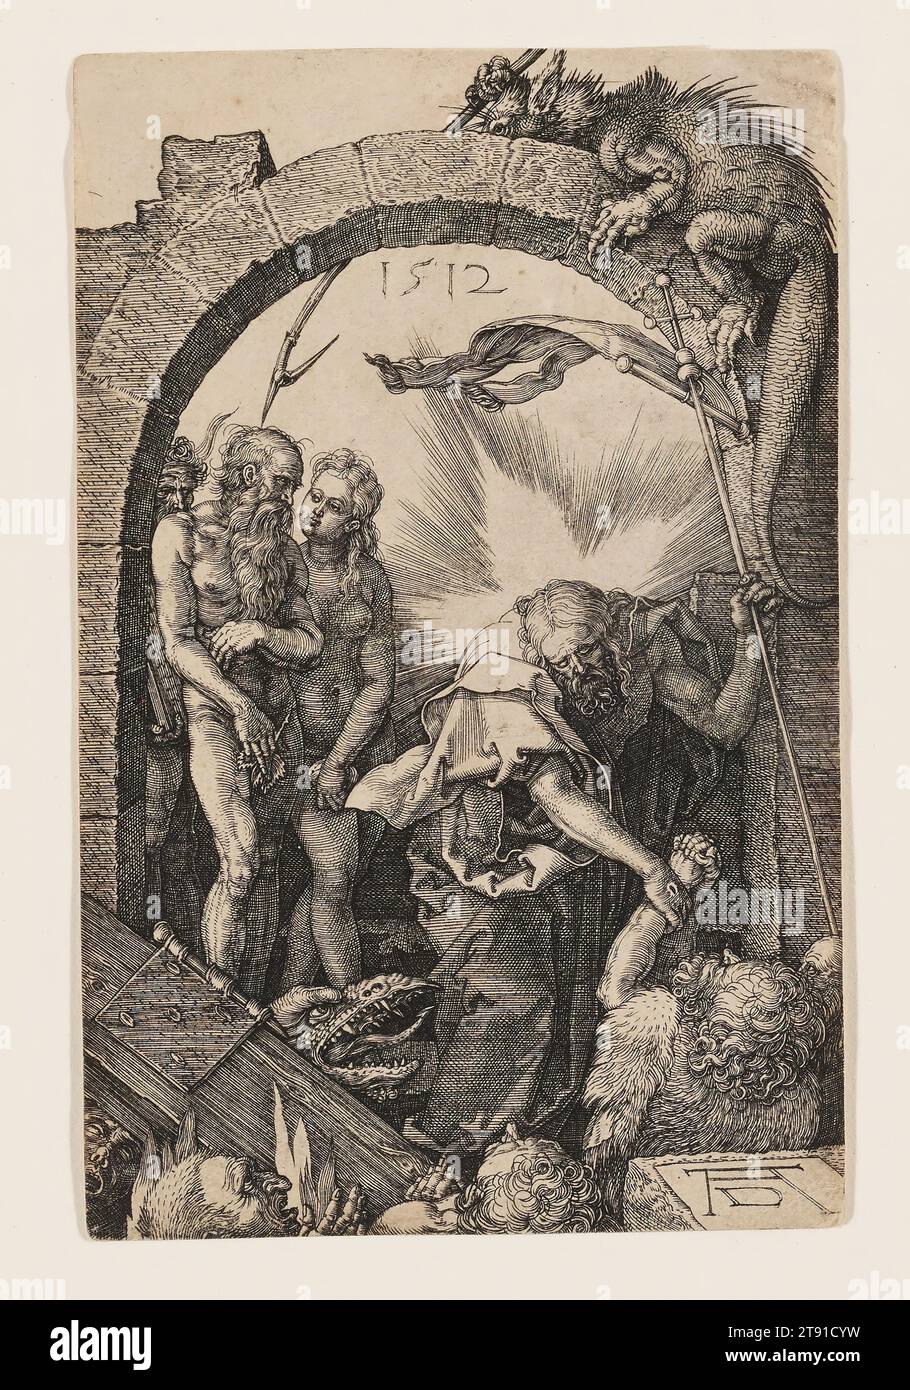 Christ in Limbo, 1512, Albrecht Dürer, tedesco, 1471–1528, 1/2 x 7/8 poll. (11,43 x 7,3 cm) (immagine), incisione, Germania, XVI secolo, durer eseguì la passione incisa durante gli anni 1507-1512, mentre a metà dei vent'anni. Nei quindici piatti, Durer cercava problemi difficili, come l'accorciamento estremo. C'è un marcato oscuramento dell'intera immagine, mentre le figure sono accentuate da una luce sobria ma espressiva che aggiunge drammaticità agli eventi cupi. Il posizionamento coerente delle figure in primo piano unifica la serie. Durer le vendeva abitualmente come un set Foto Stock